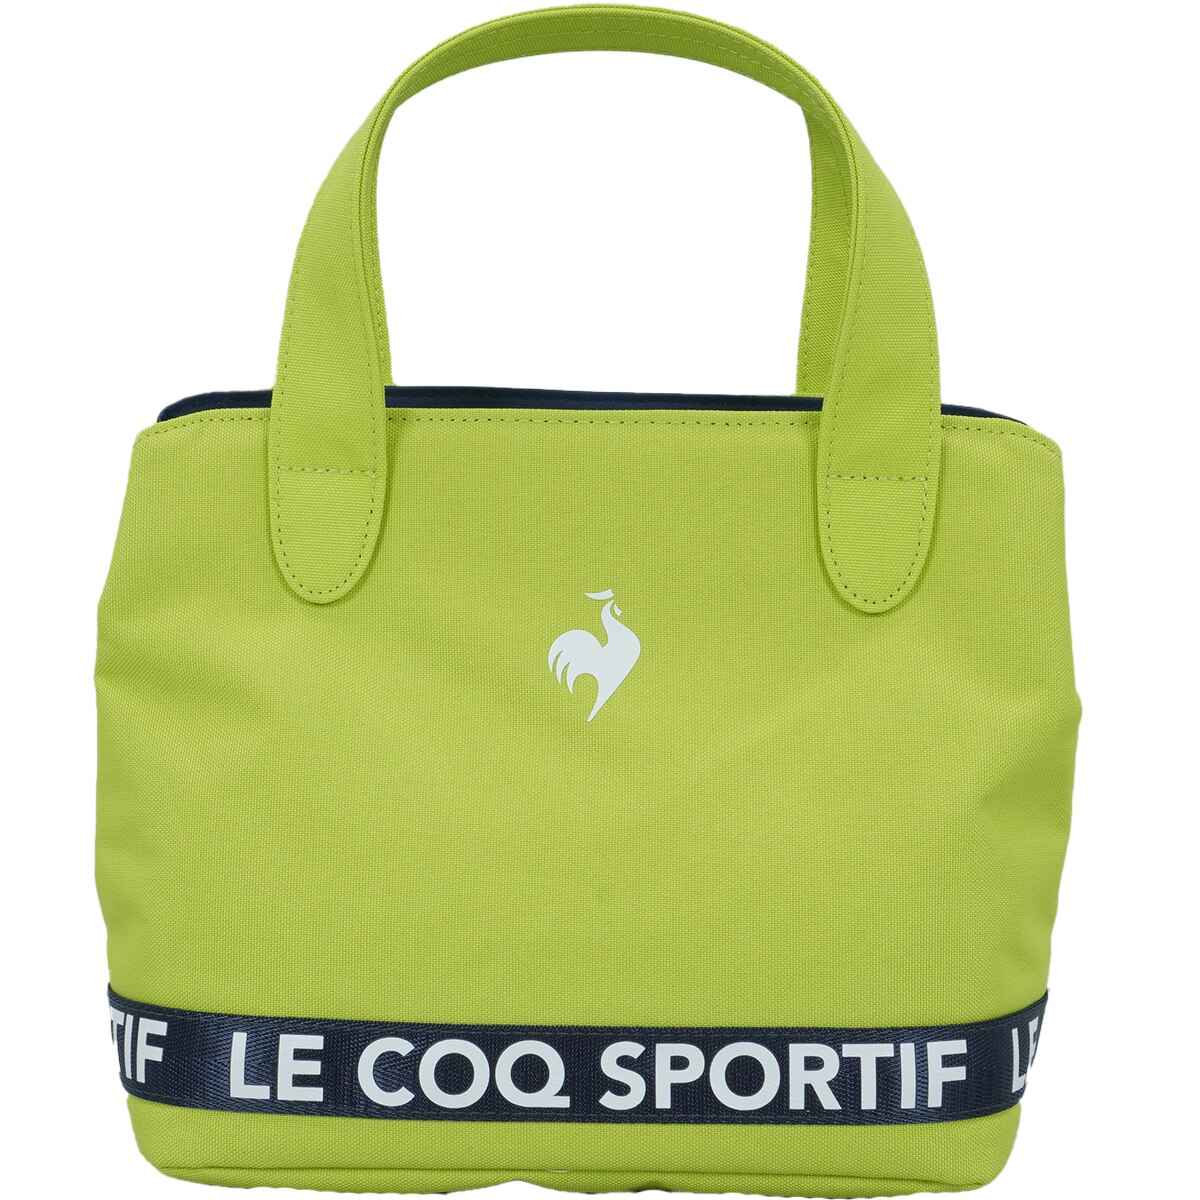 再生ポリエステル カートポーチ(ラウンドバッグ)|Le coq sportif GOLF